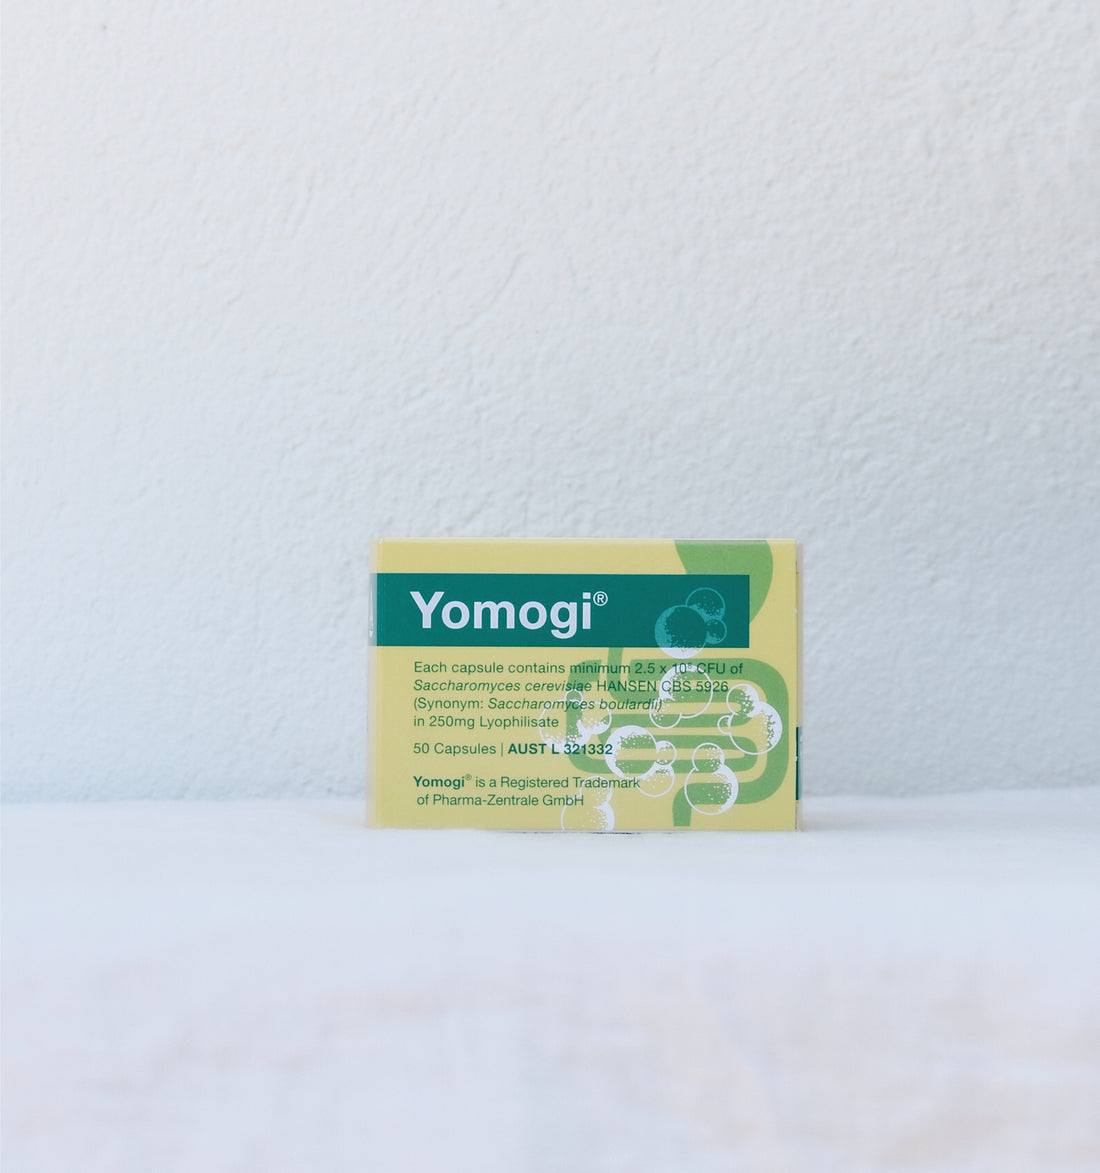 Yomogi Probiotic